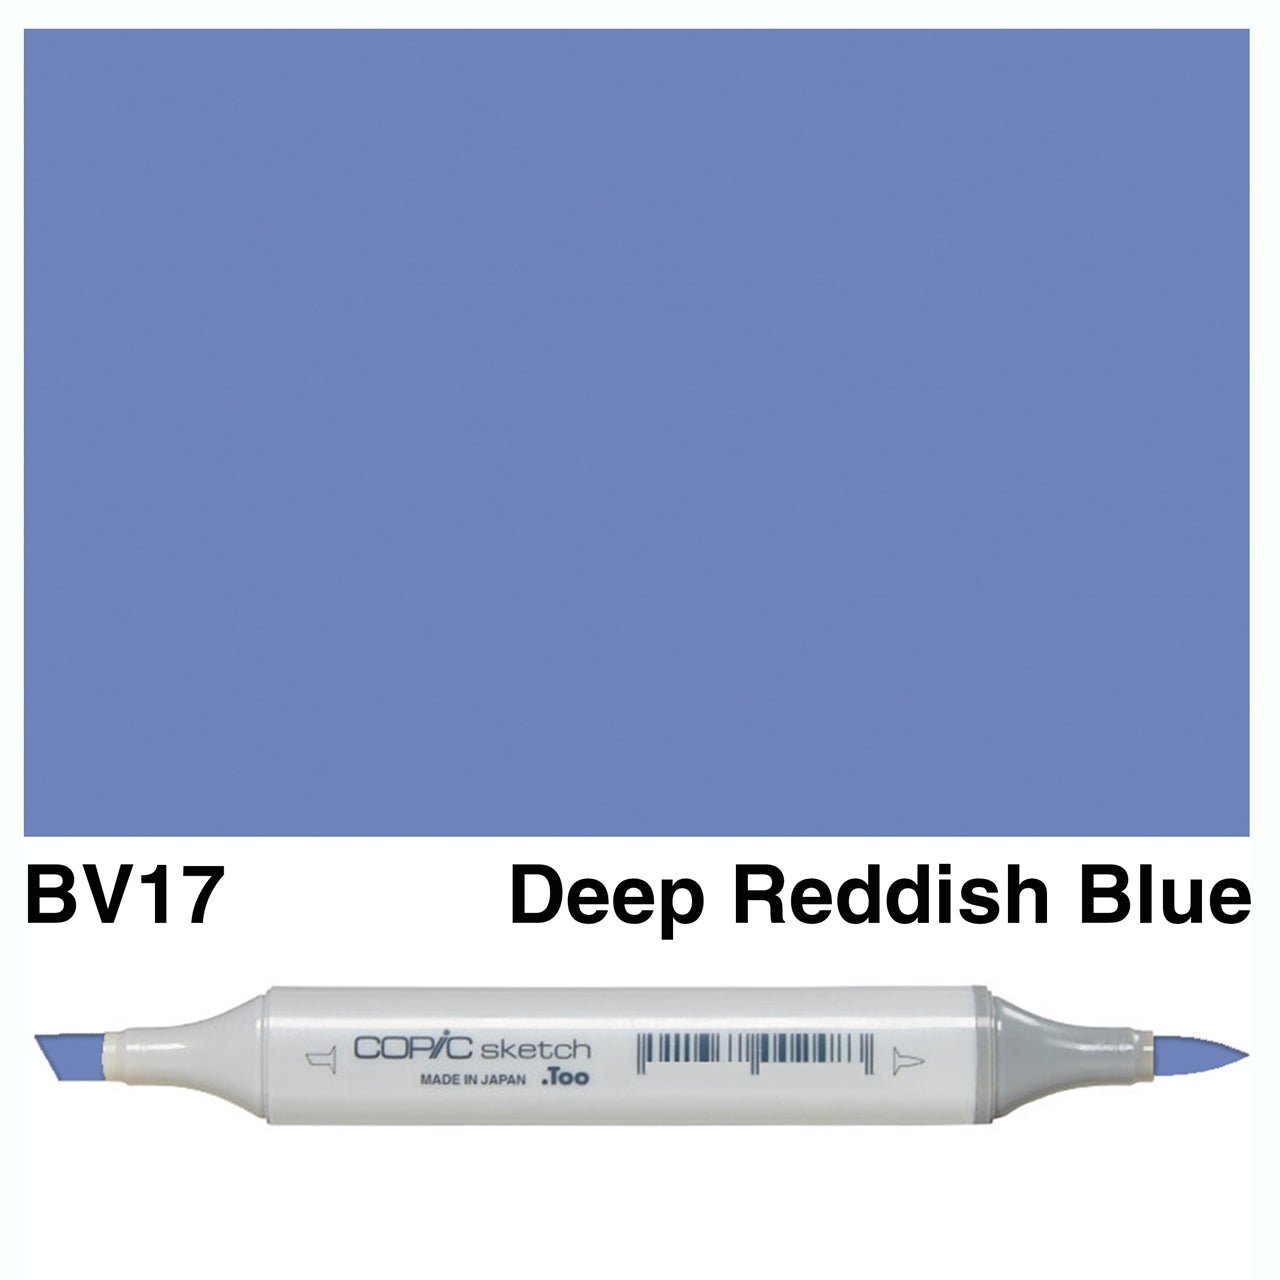 Copic Sketch BV17 Deep Reddish Blue - theartshop.com.au